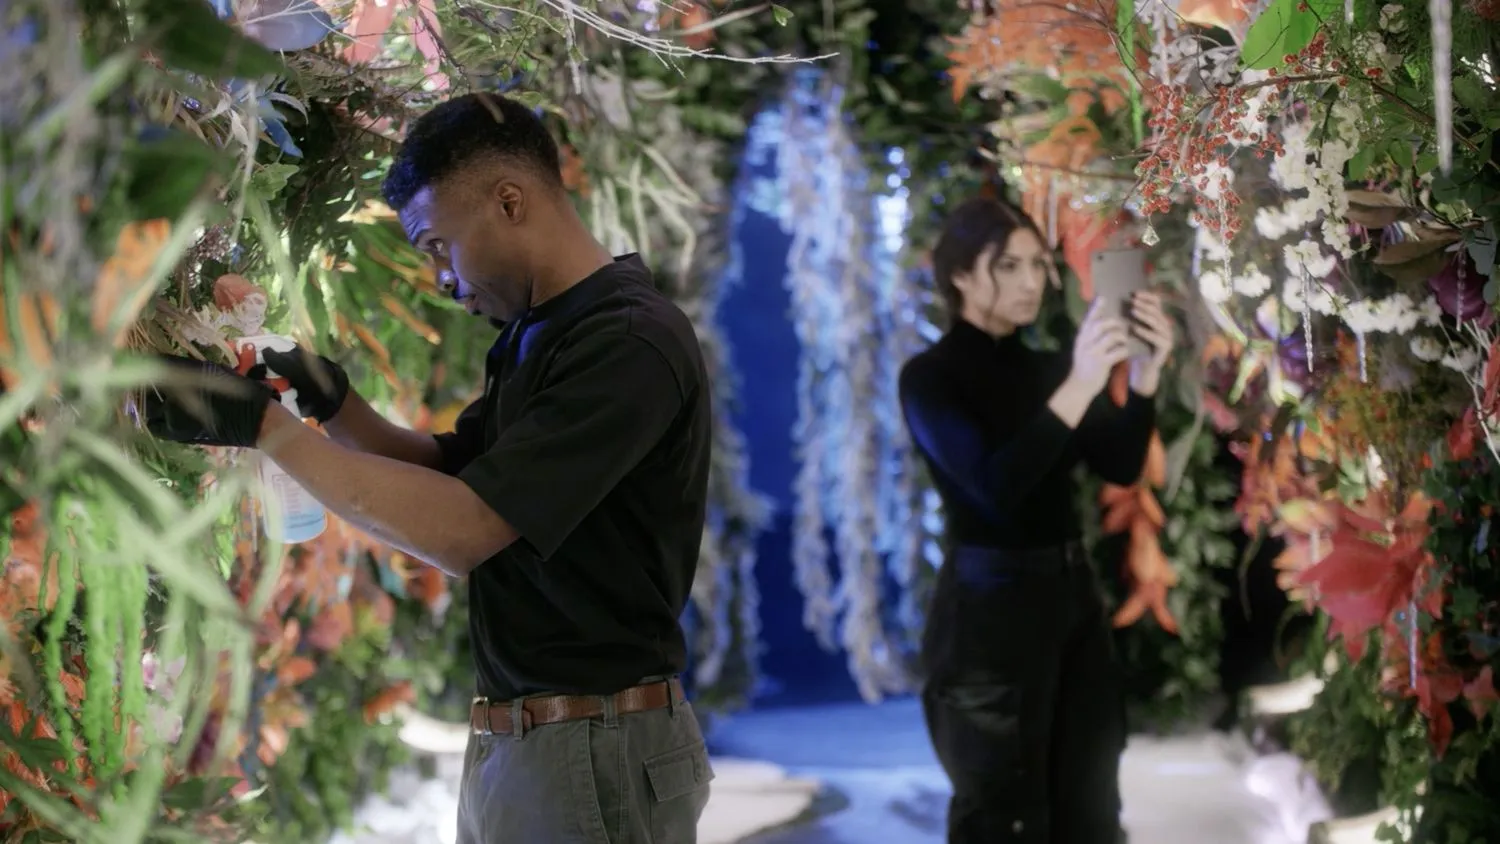 Zwei Menschen, die sich in einer futuristischen Umgebung um Pflanzen kümmern